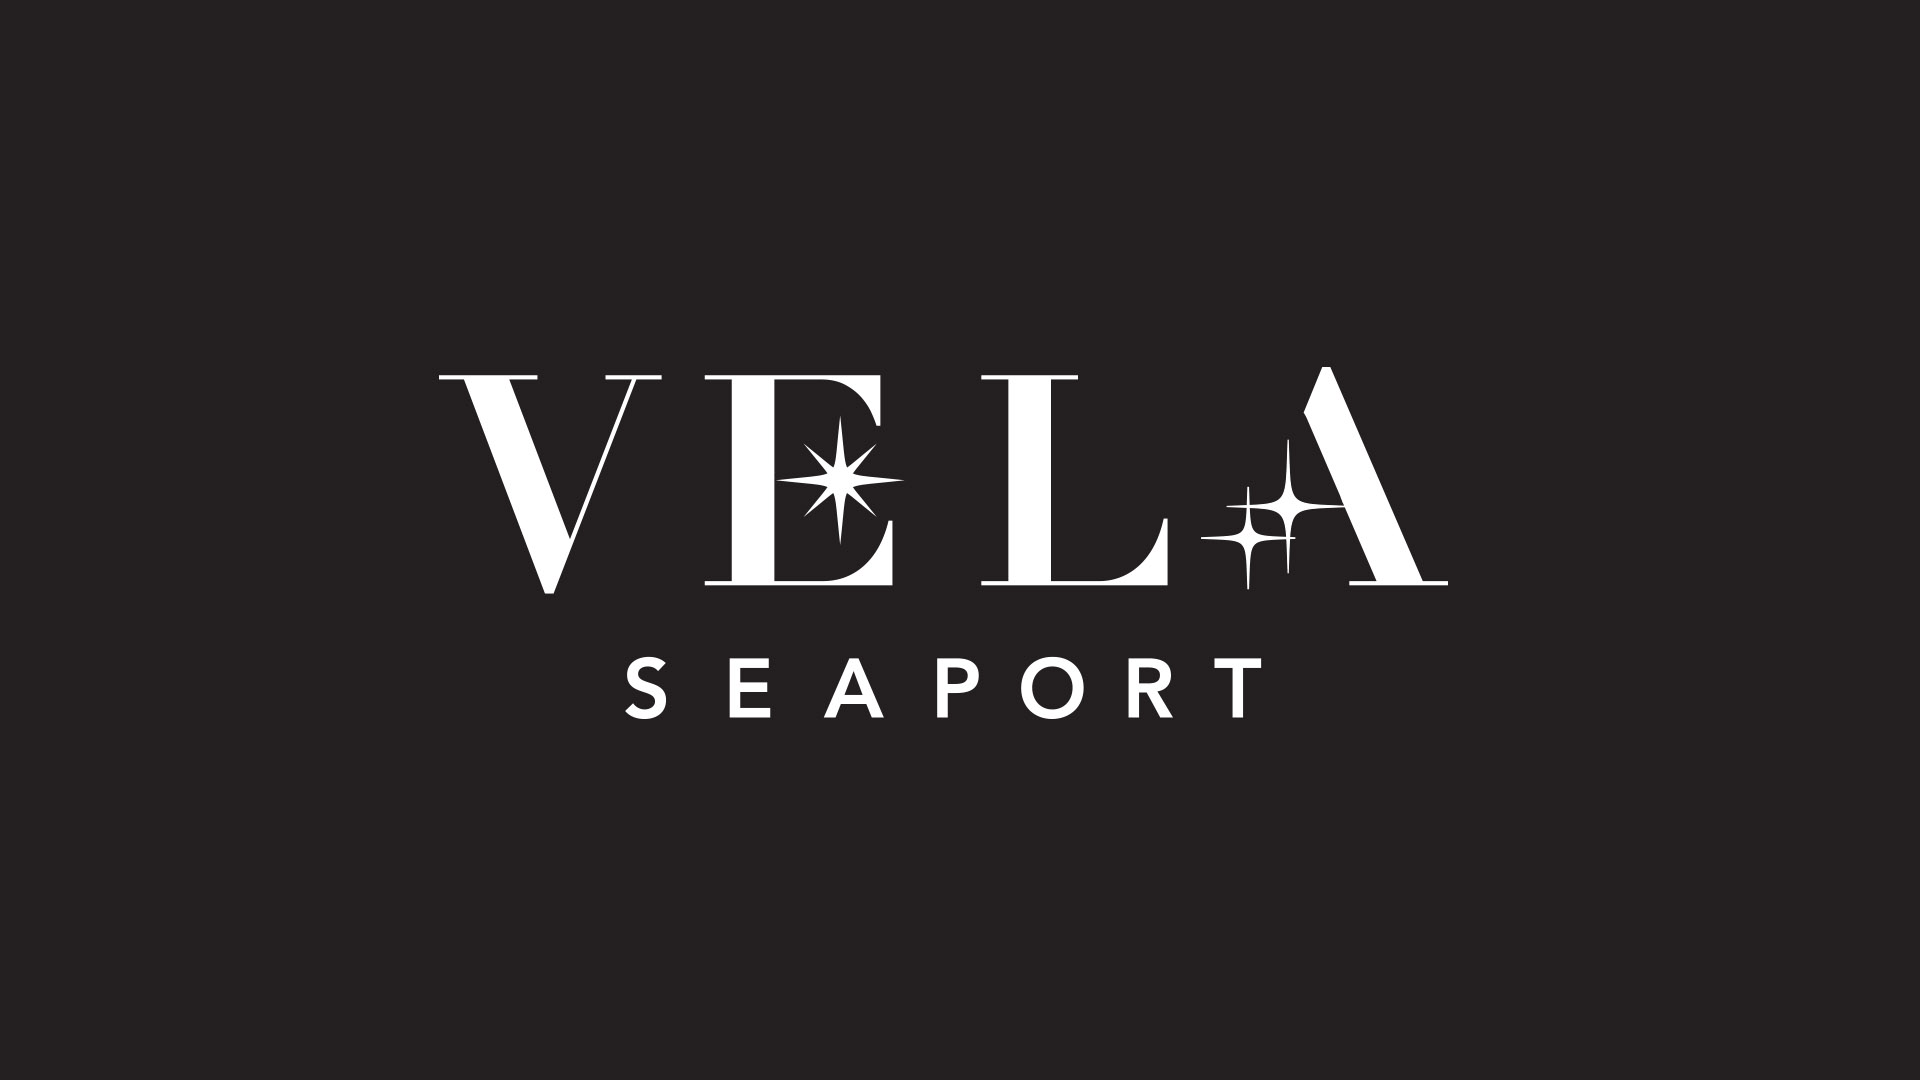 vela seaport logo on black background with white type